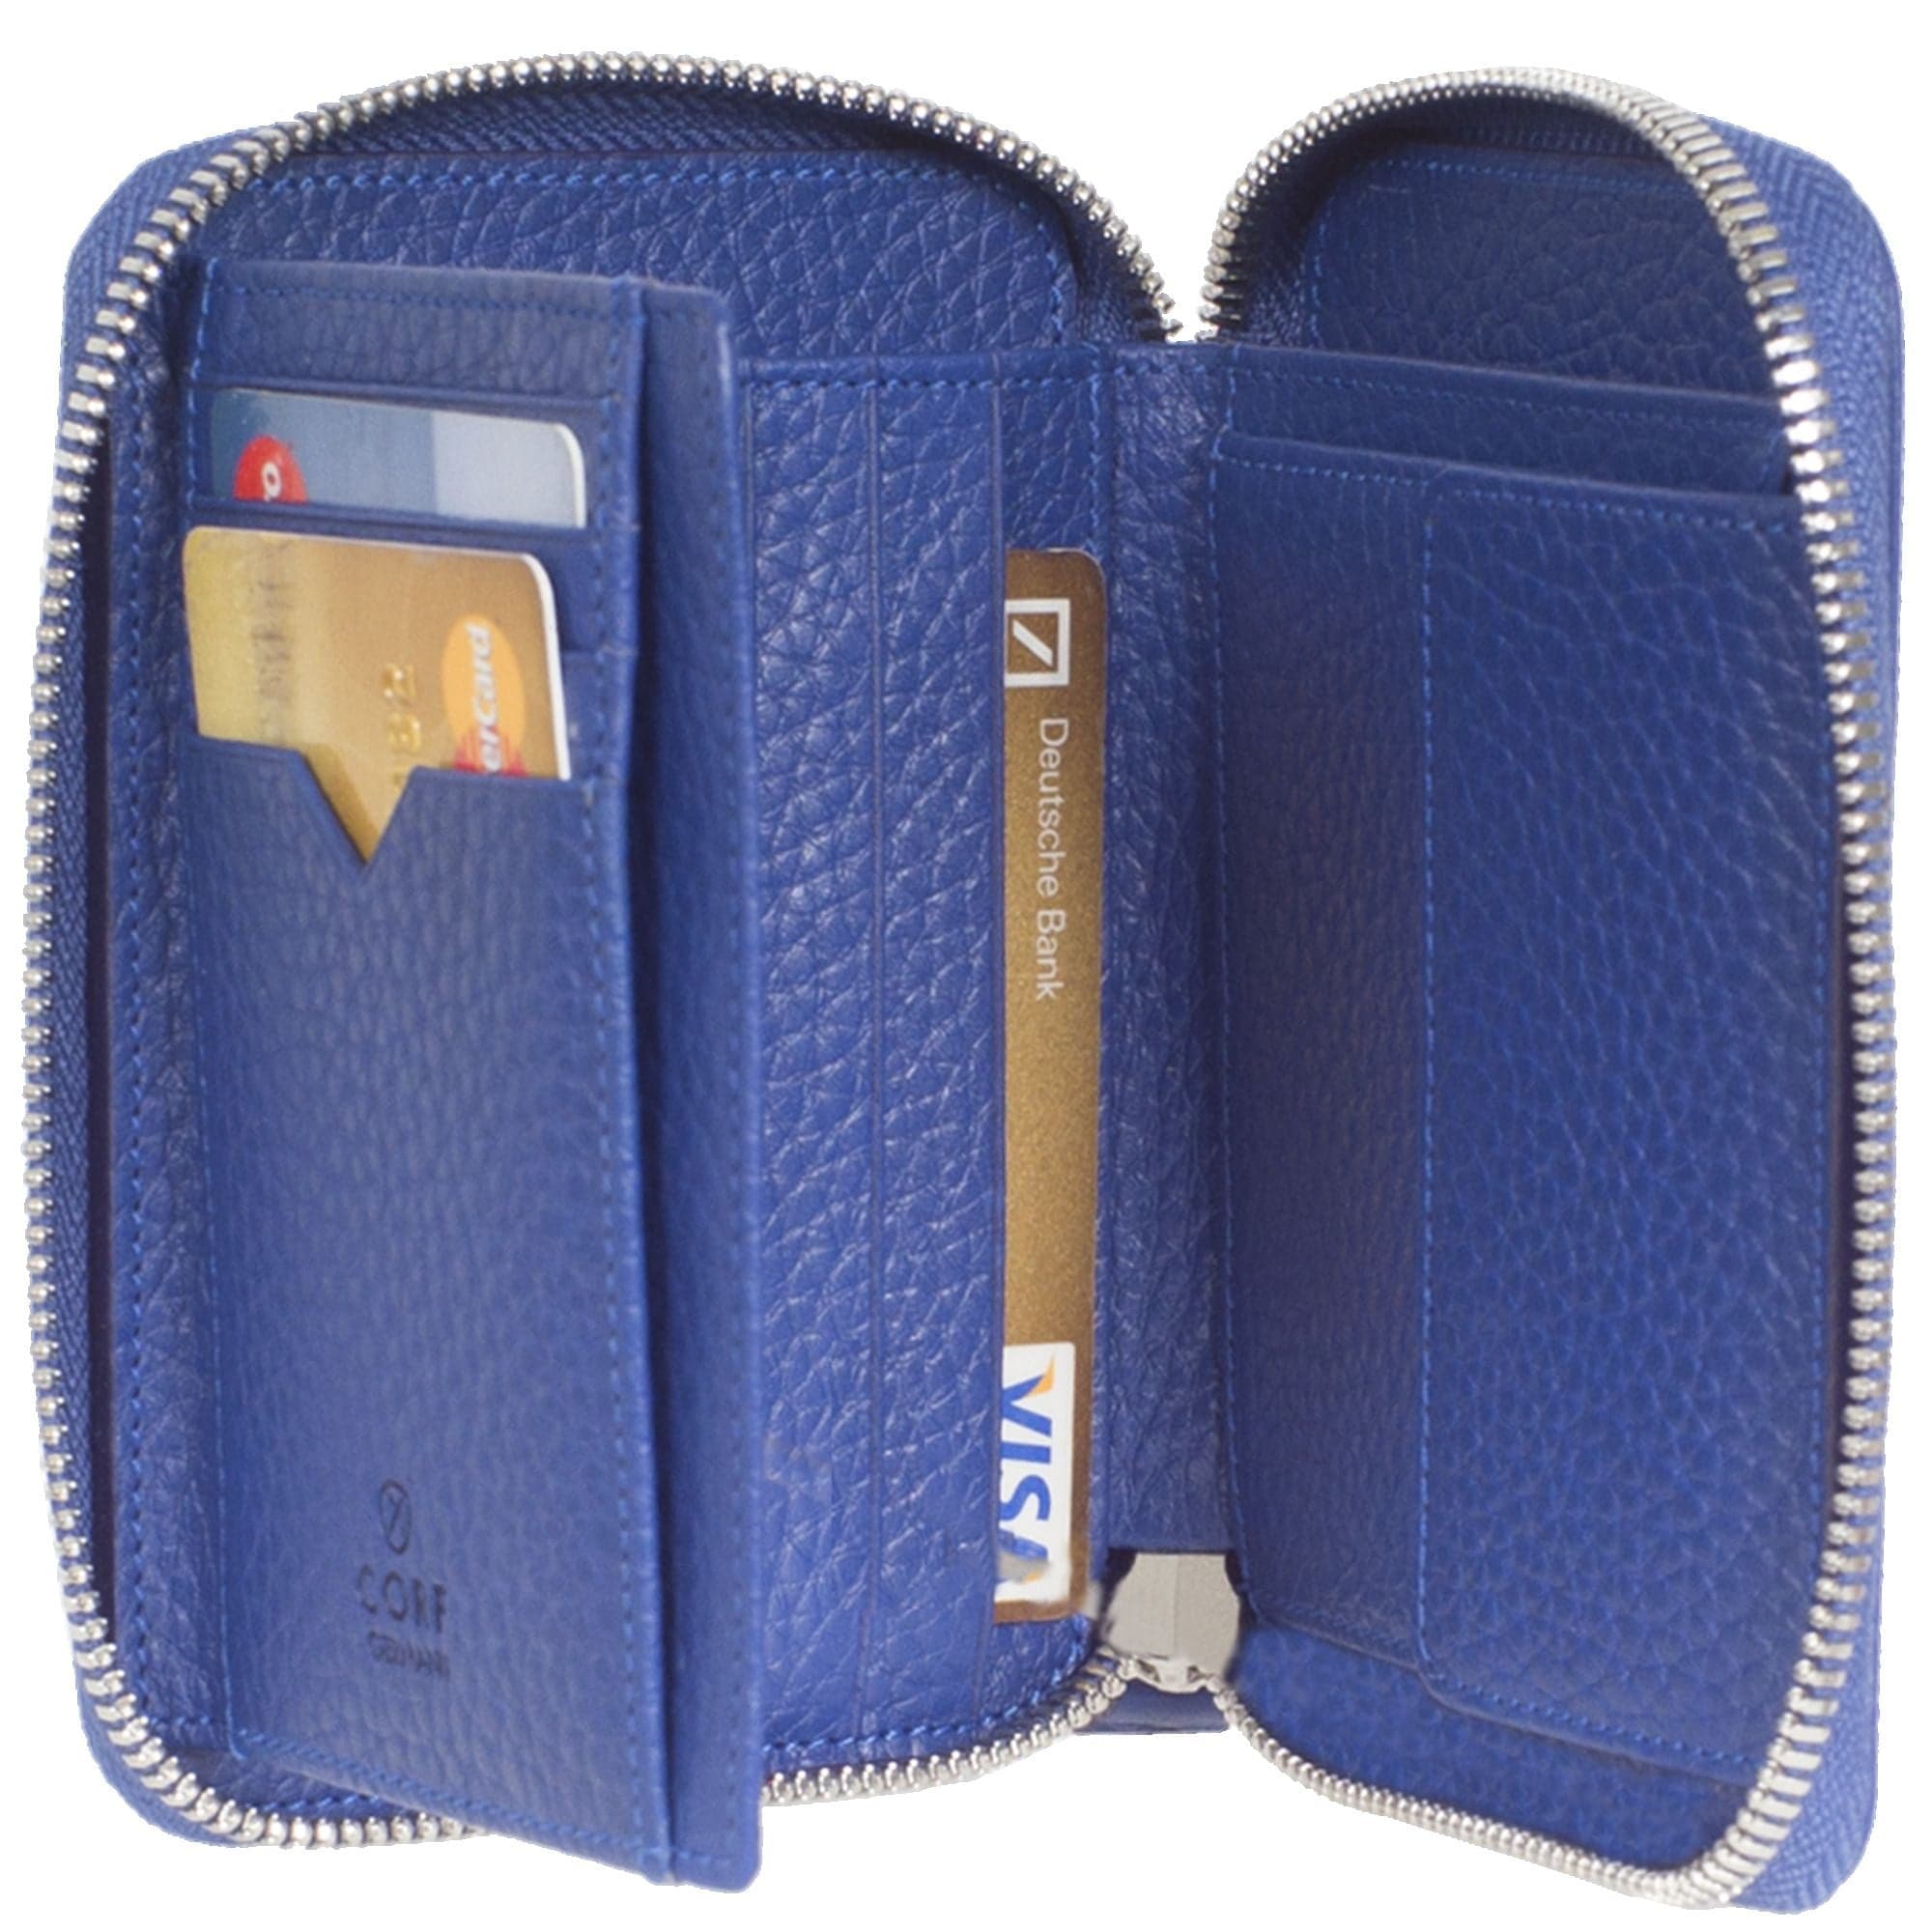 Geldbörse Portemonnaie Leder hellblau mit Reißverschluss